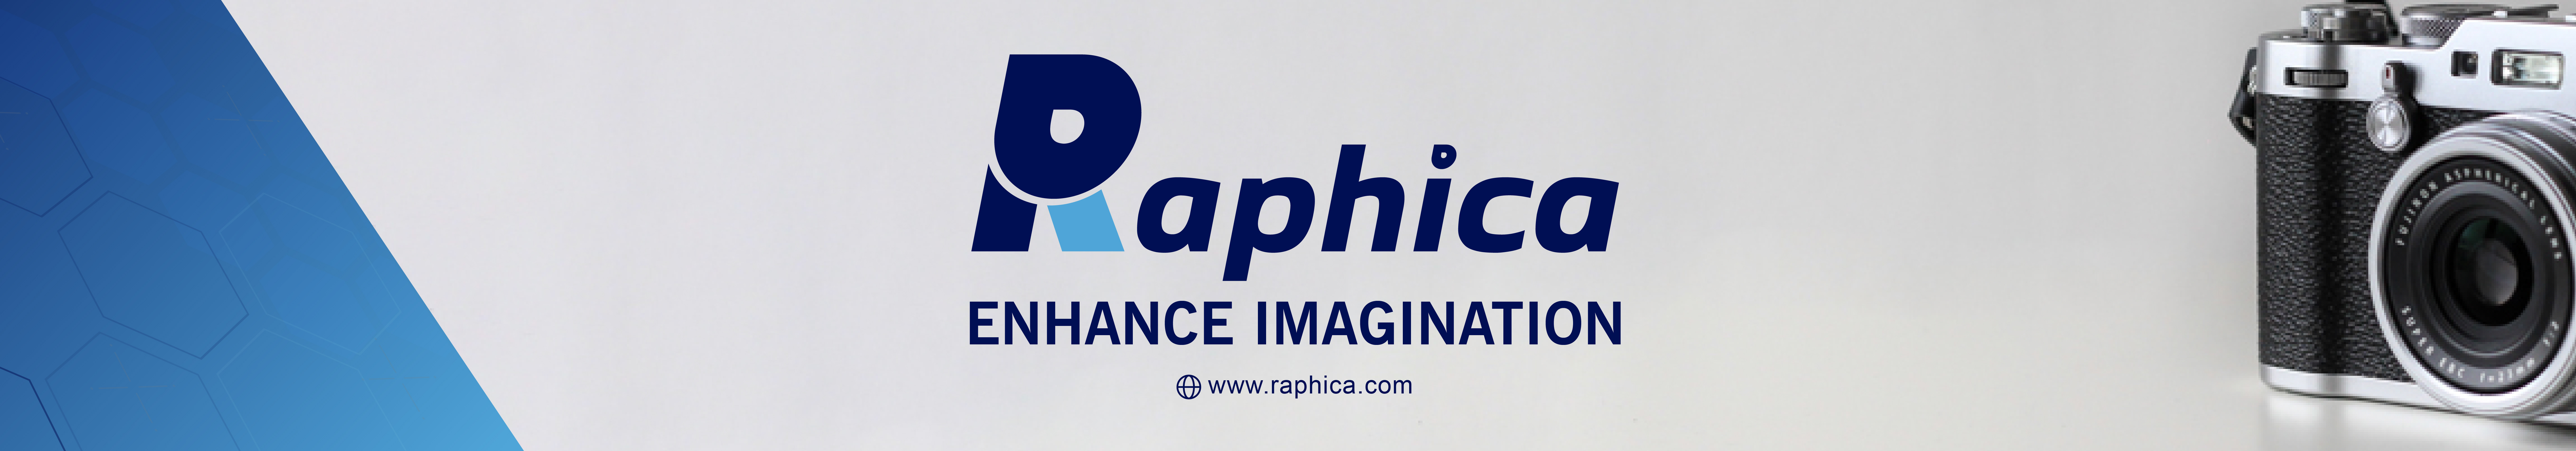 Raphica .com's profile banner